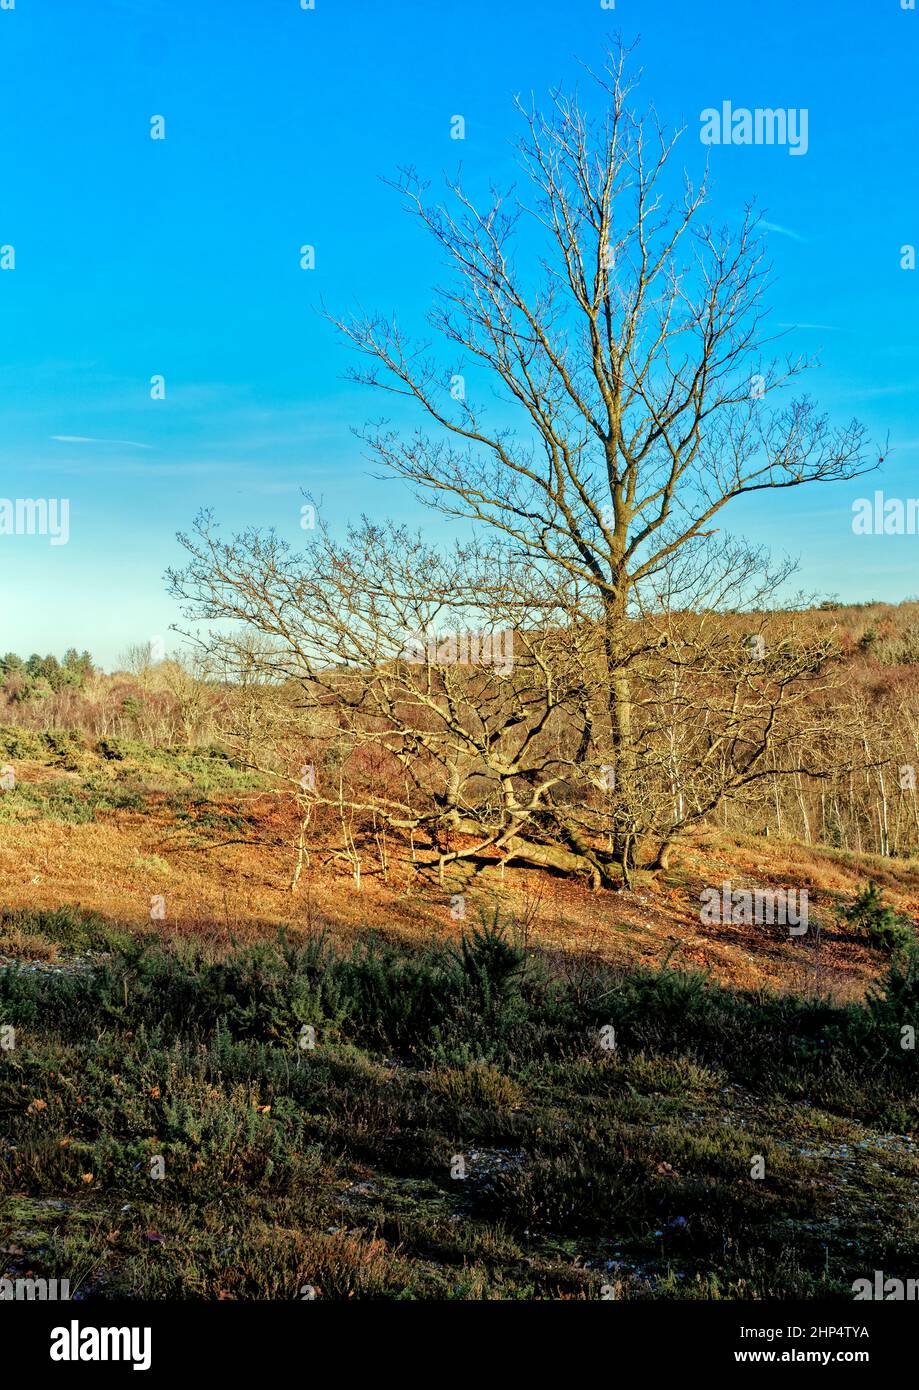 Típico Norte de Norfolk paghlandat Holt Lowes con una mezcla de salobres, gorges y árboles dispersos en el suelo estéril de arena y pedregoso, Foto de stock